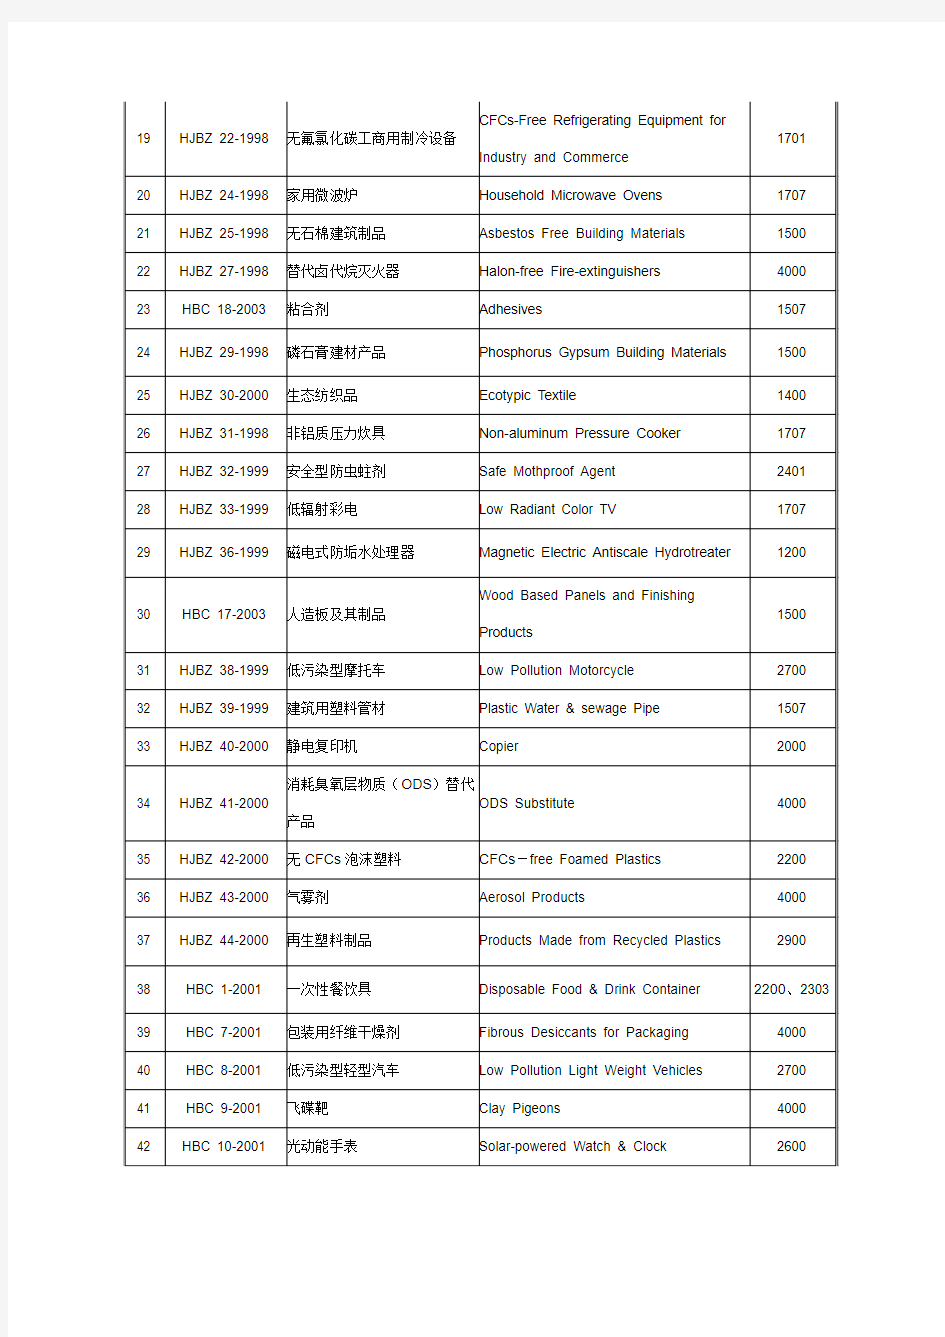 中国环境标志产品认证范围(57种)